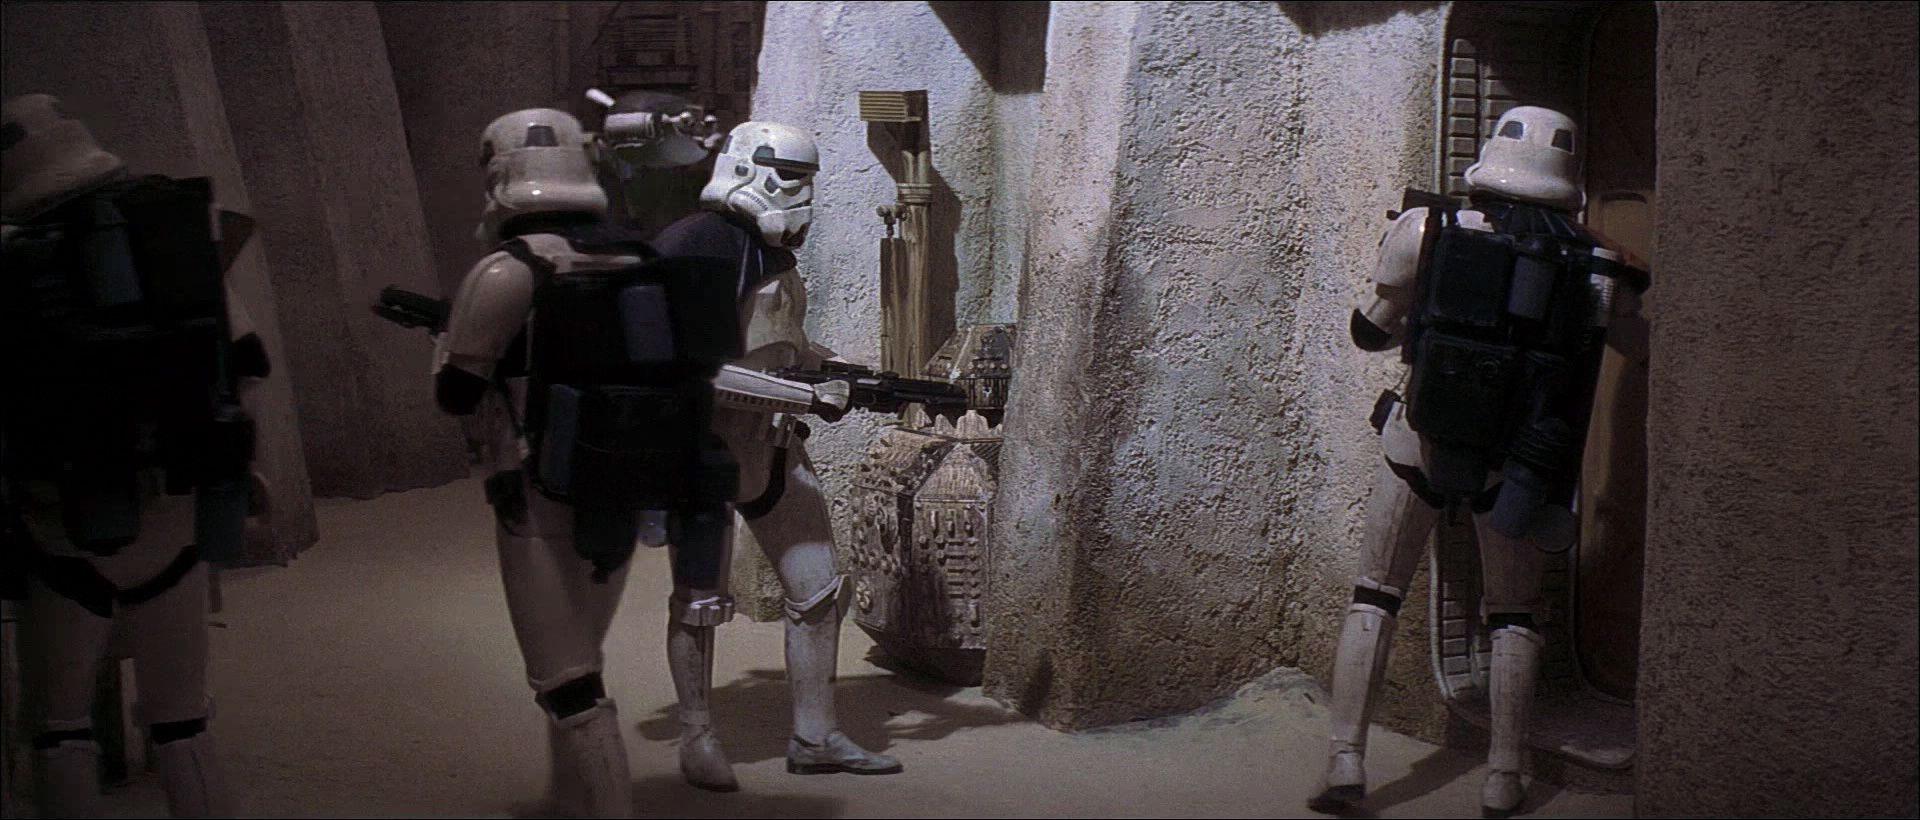 Imperial Stormtroopers go door-to-door in the streets of Mos Eisley.